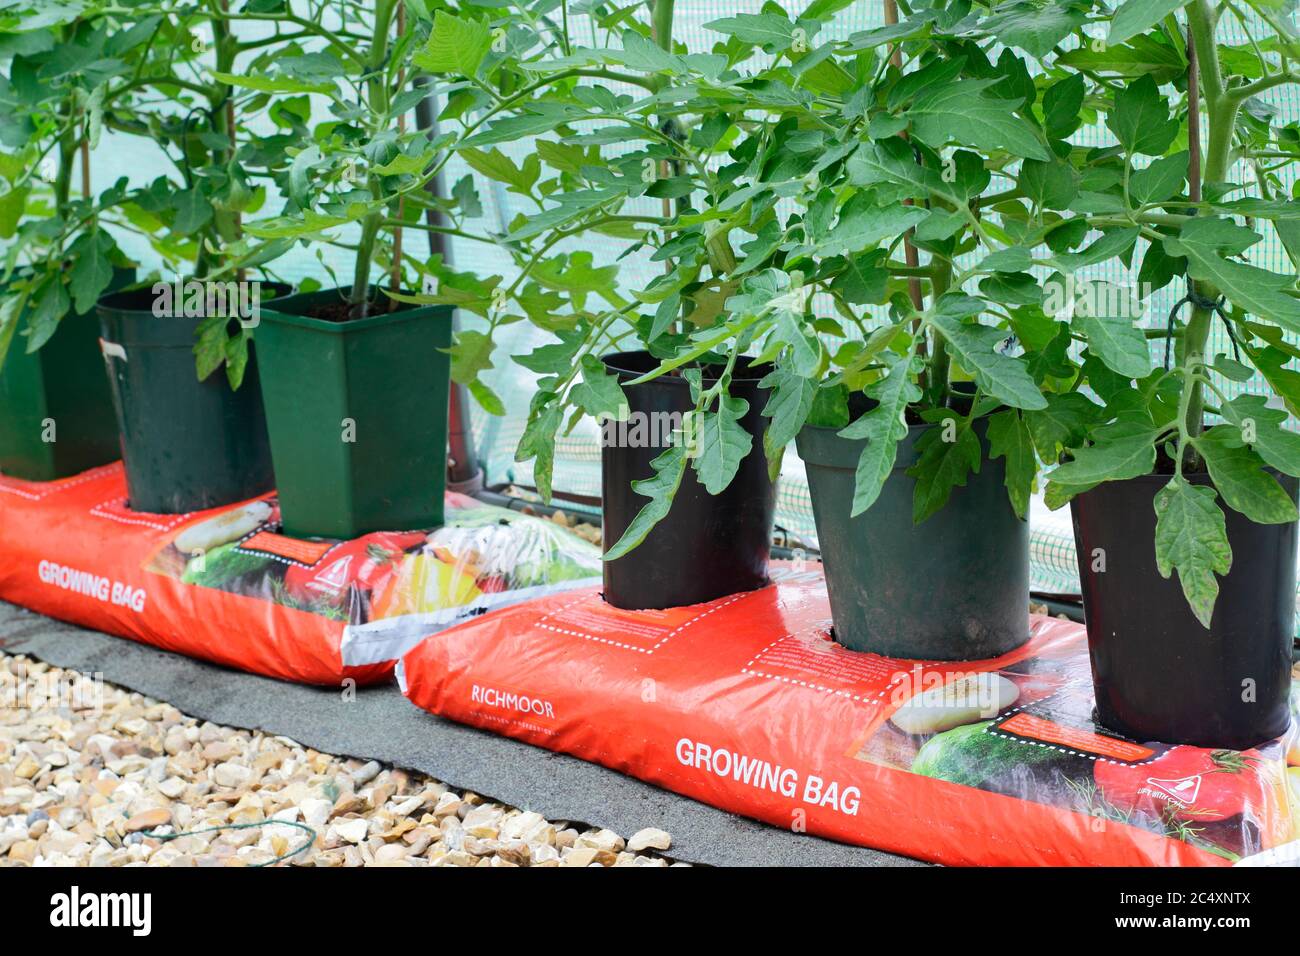 Solanum lycopersicum. Piante di pomodoro coltivate in casa che crescono in pentole senza fondo messe in una borsa di crescita per aumentare il volume di composto disponibile alla pianta. Foto Stock